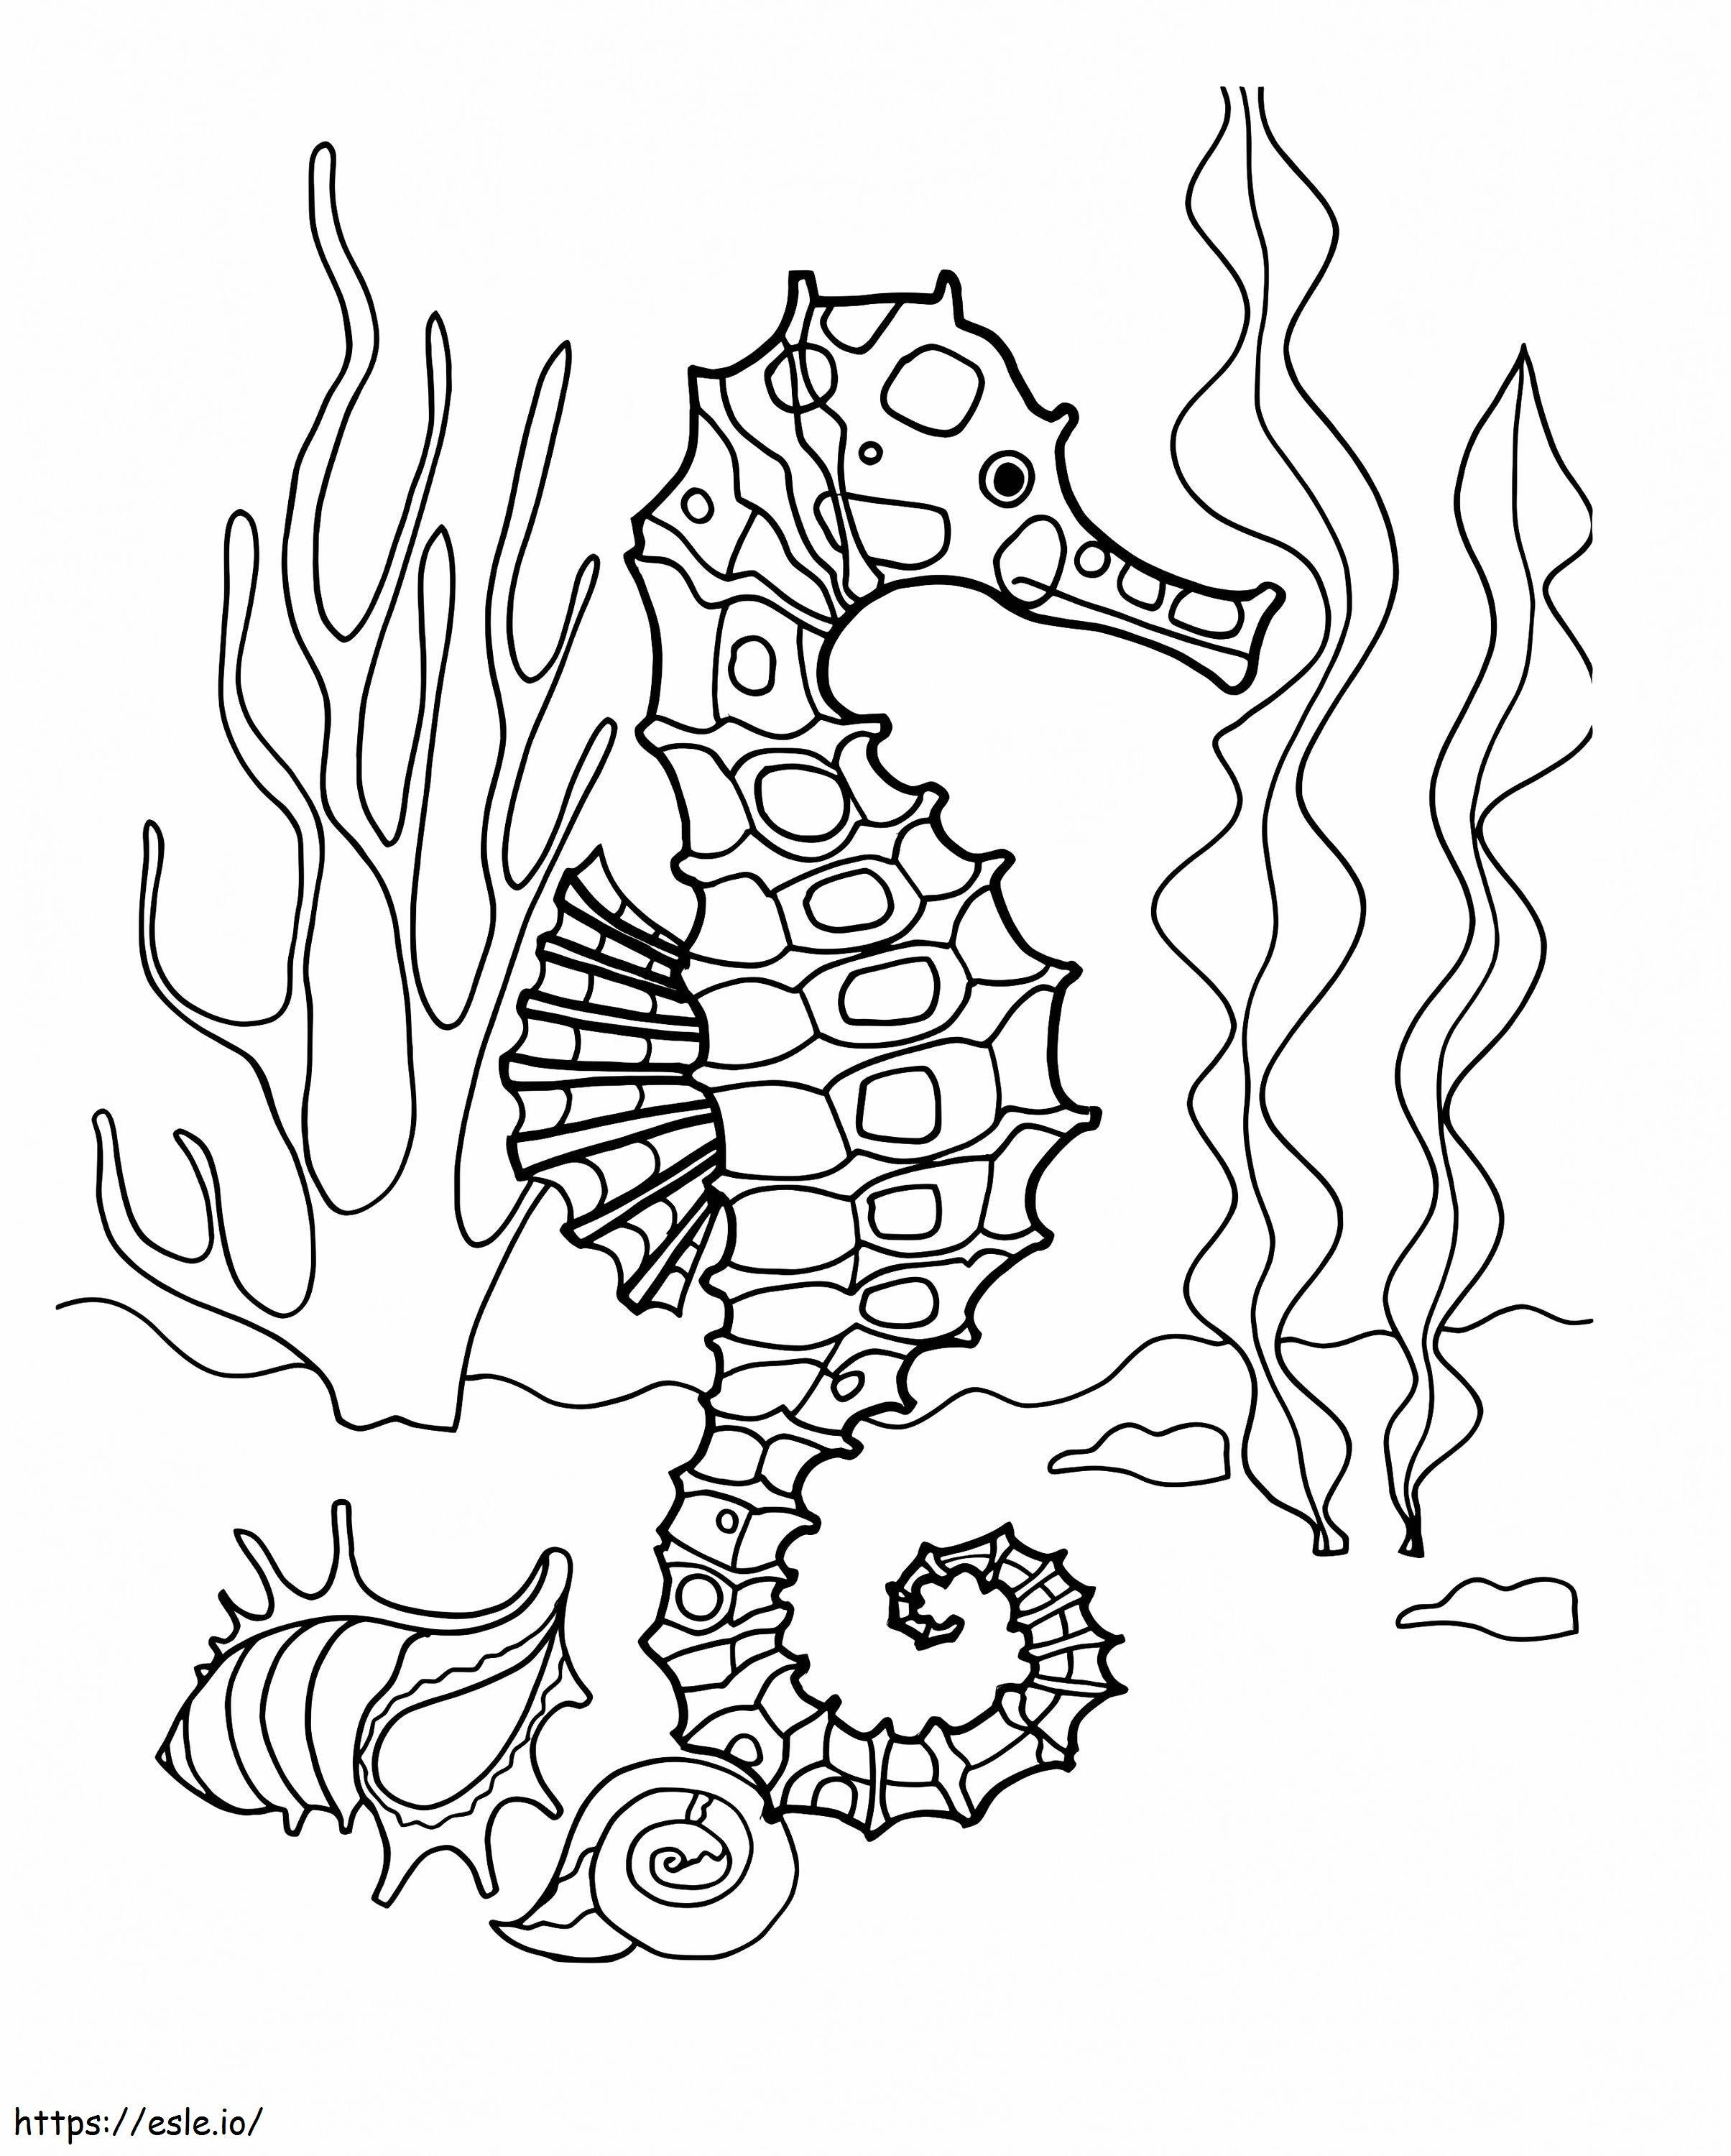 Fajny konik morski kolorowanka